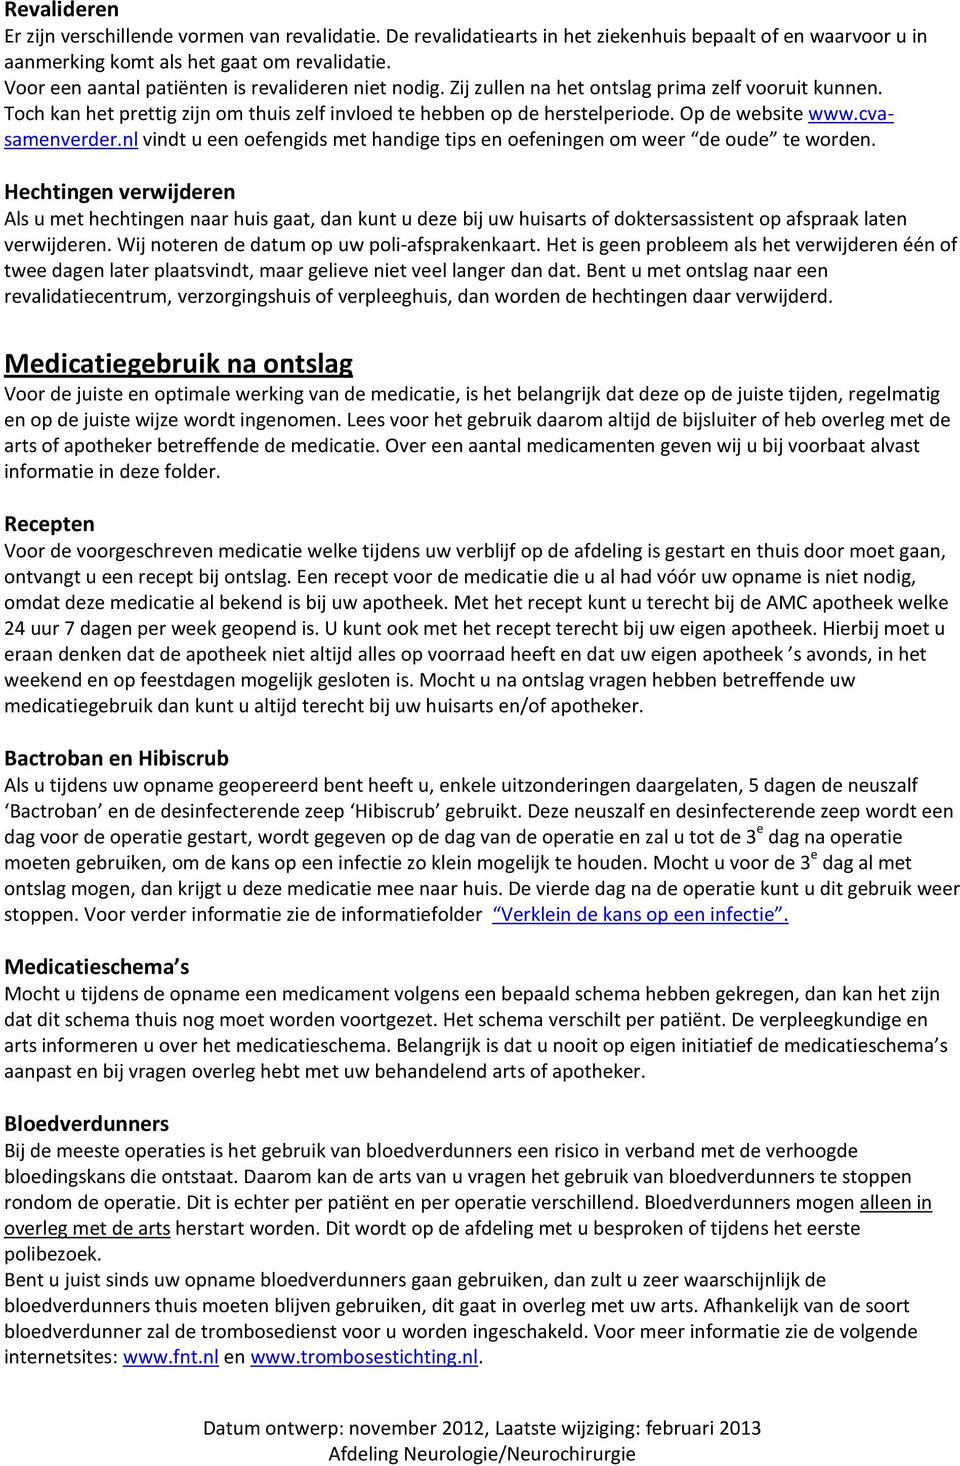 cvasamenverder.nl vindt u een efengids met handige tips en efeningen m weer de ude te wrden.